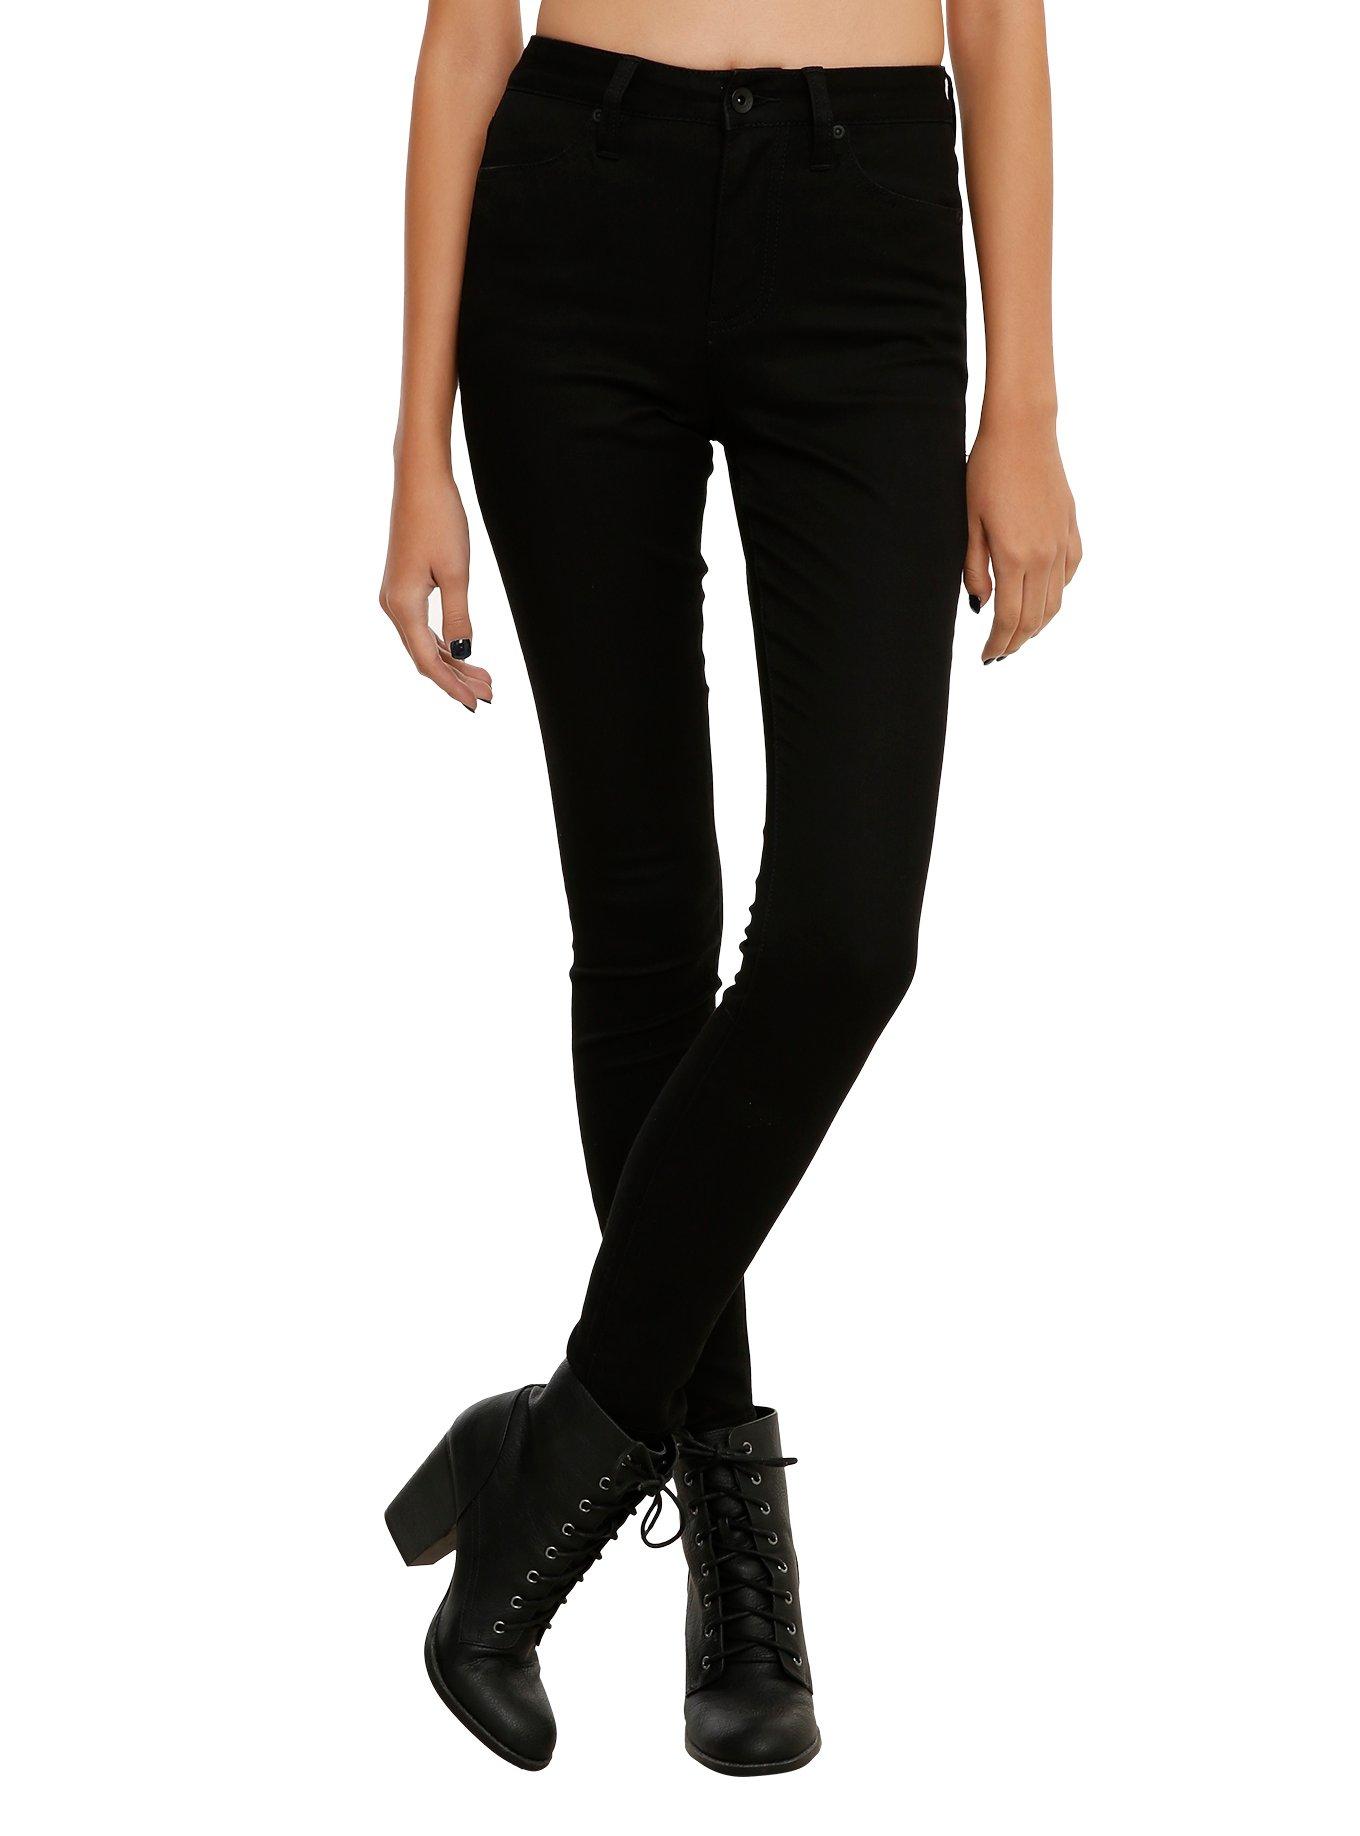 LOVEsick Black High-Waist Super Skinny Jeans, BLACK, hi-res